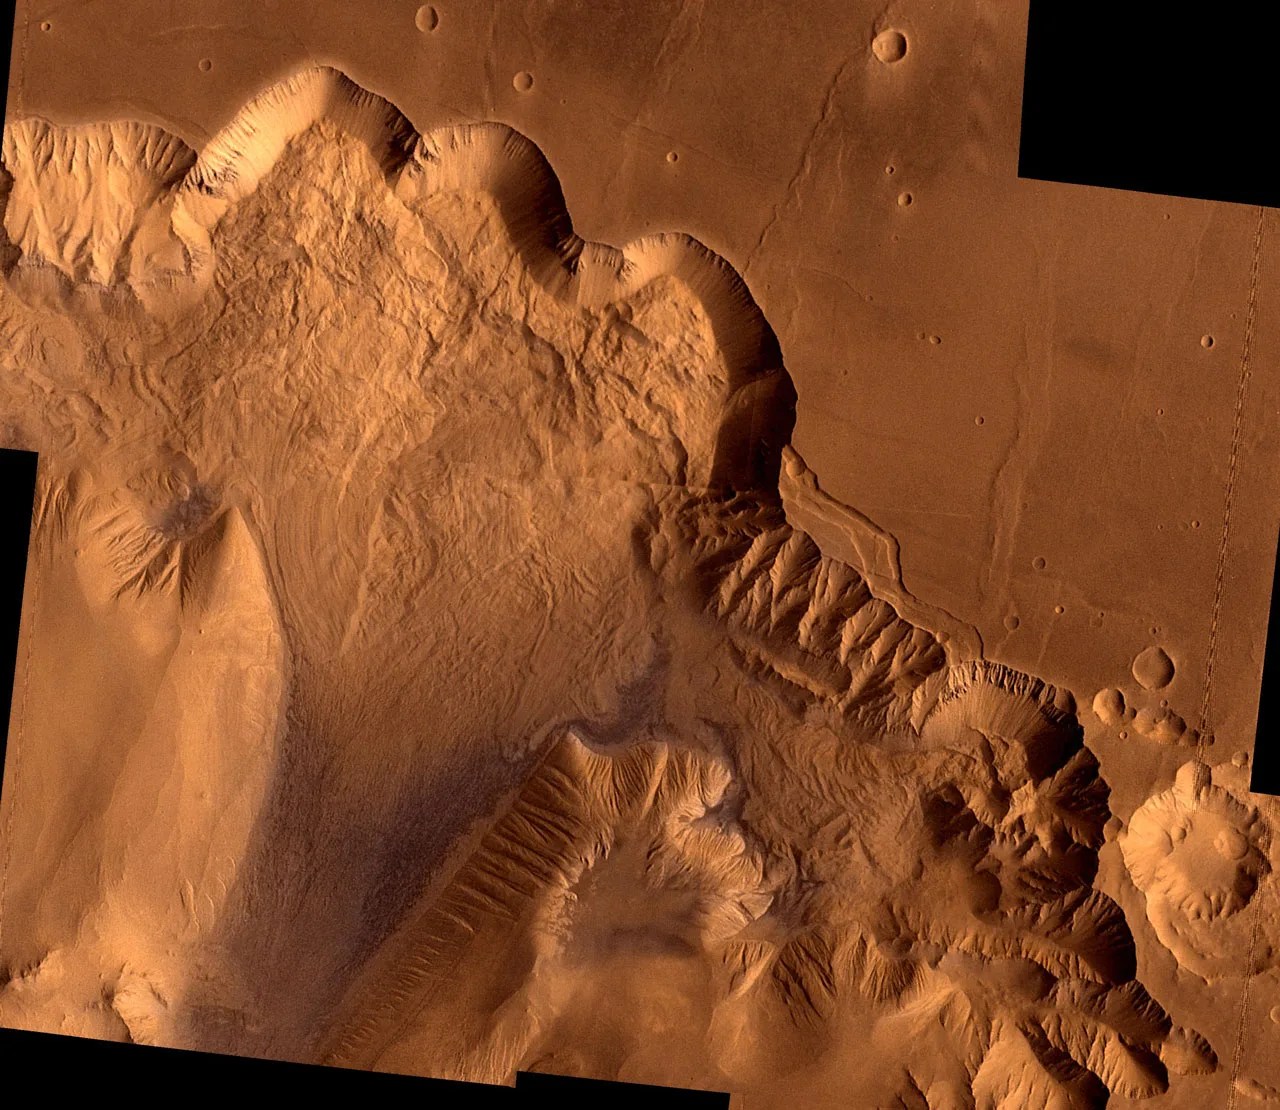 Orbital view of chasm in Valles Marineris on Mars.